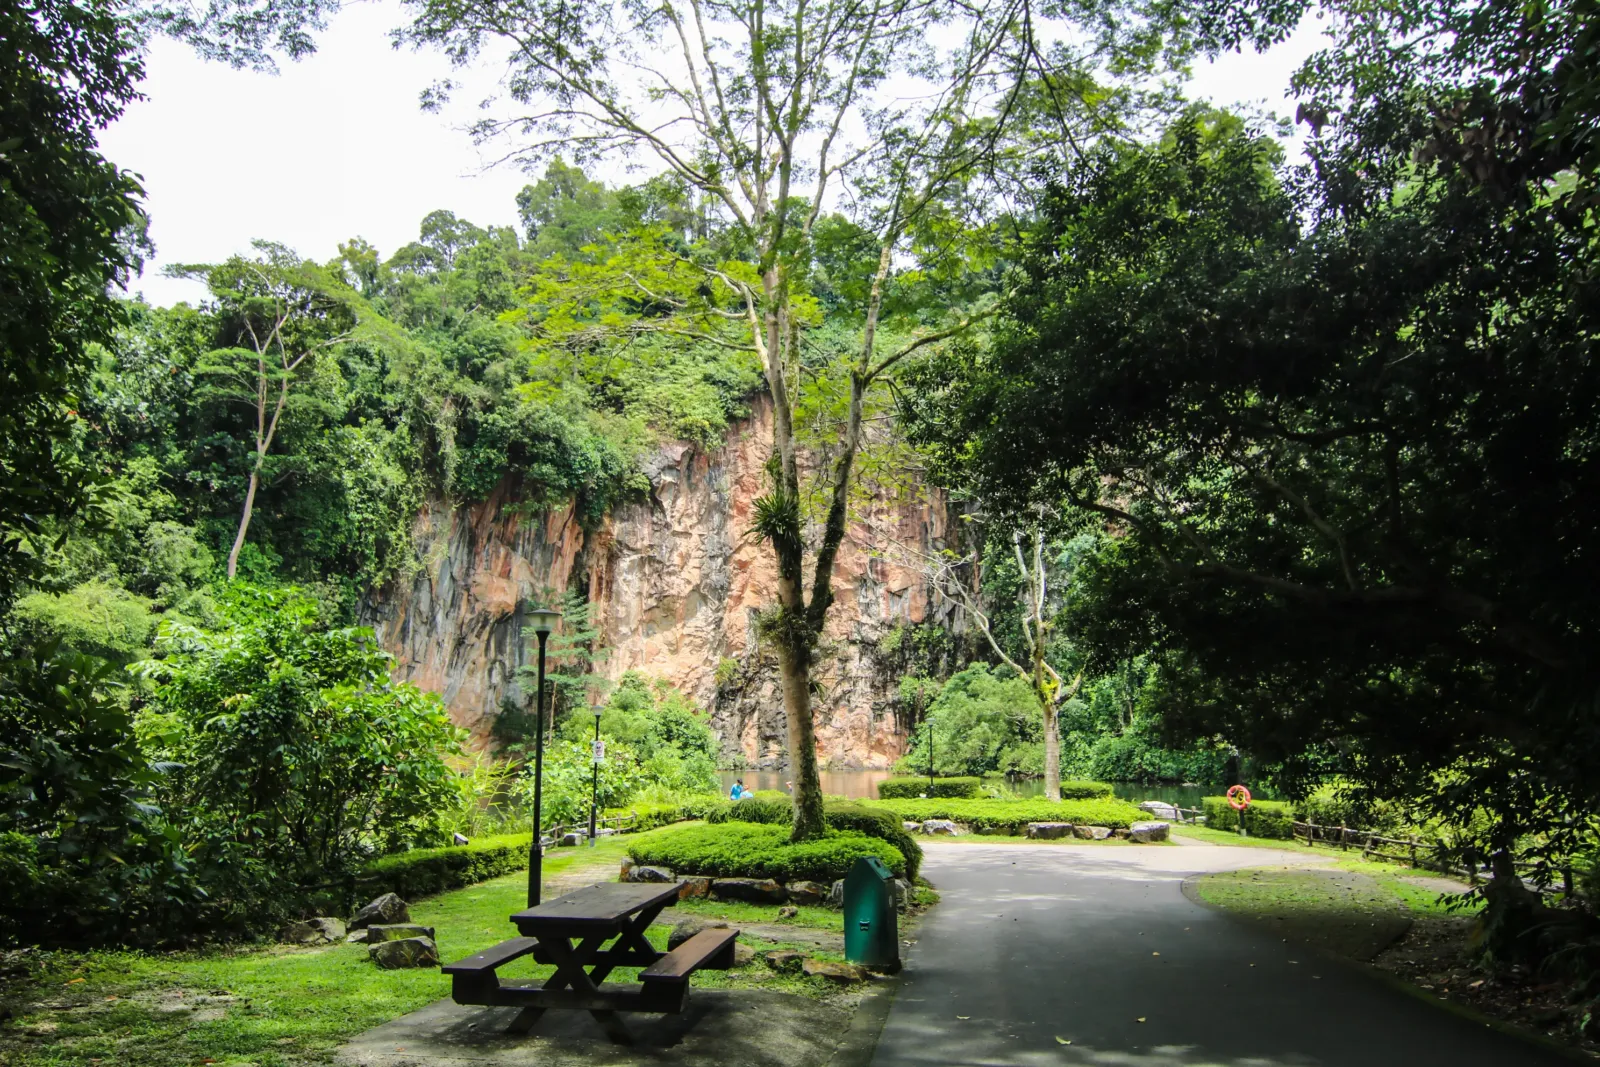 Bukit Batok Town Park